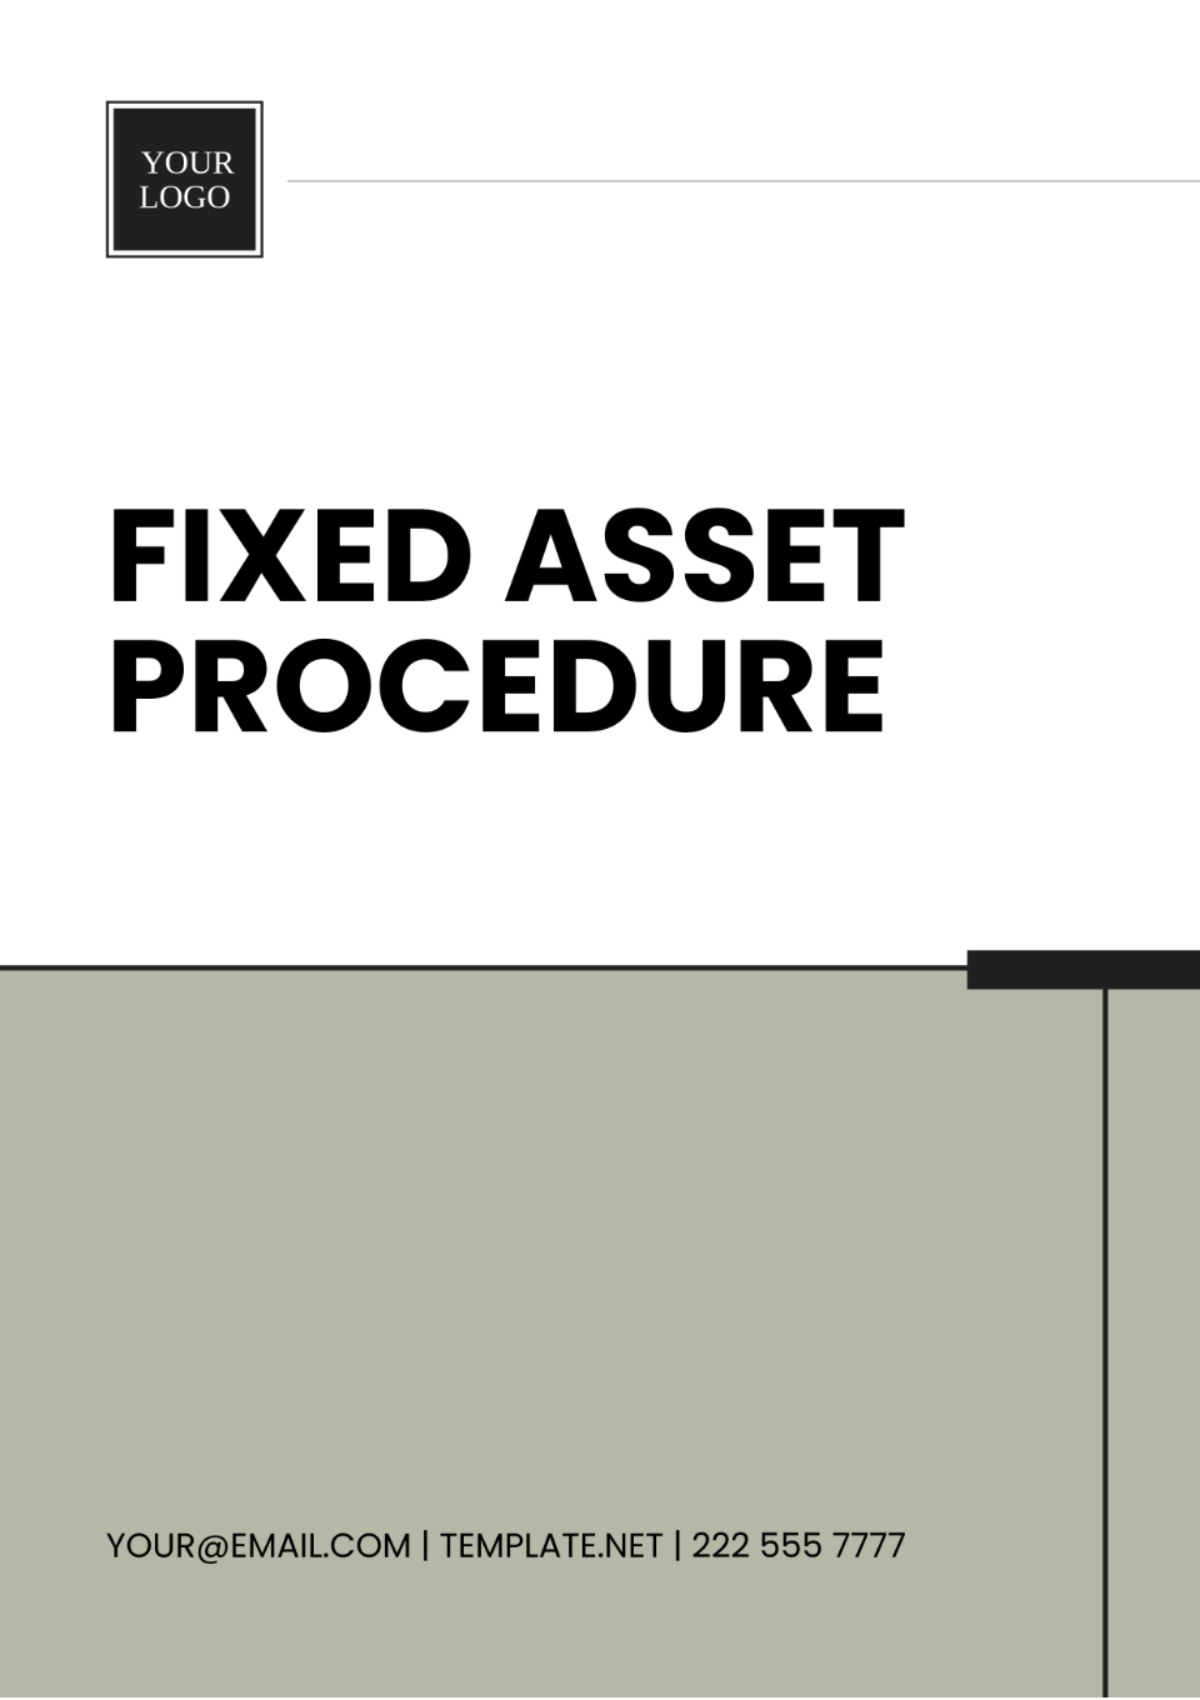 Fixed Asset Procedure Template